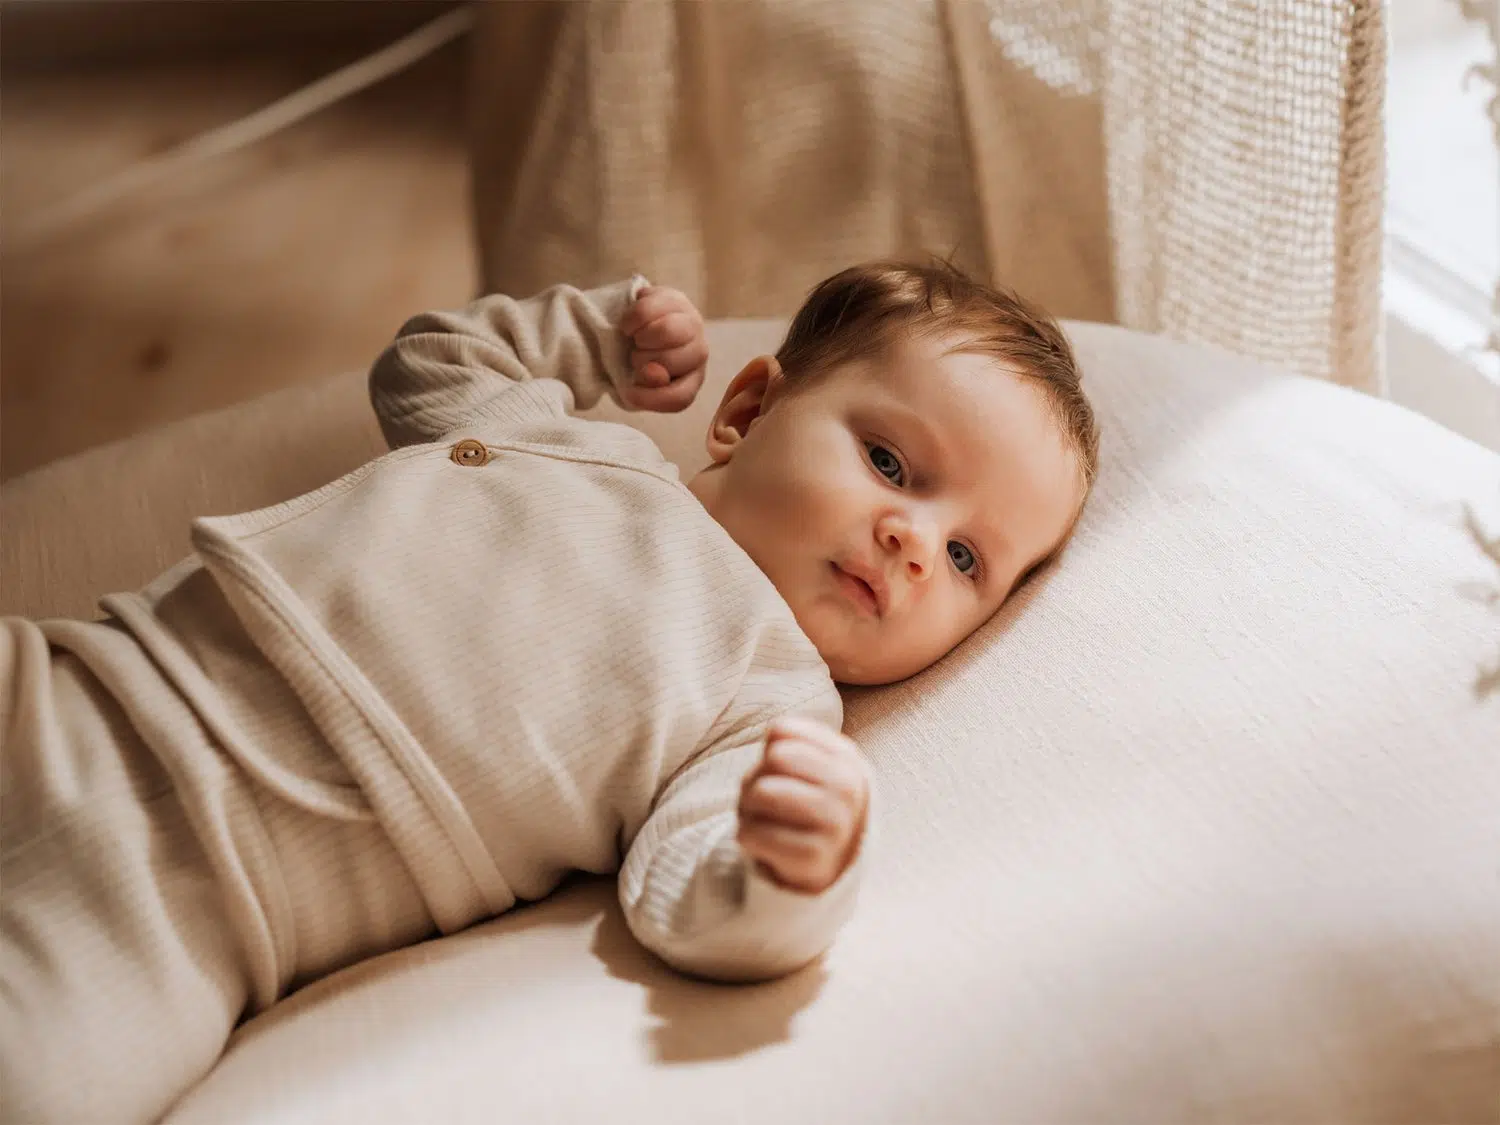 Accesorios Para Tu Sesion De Fotografia Con Tu Bebe Recien Nacido